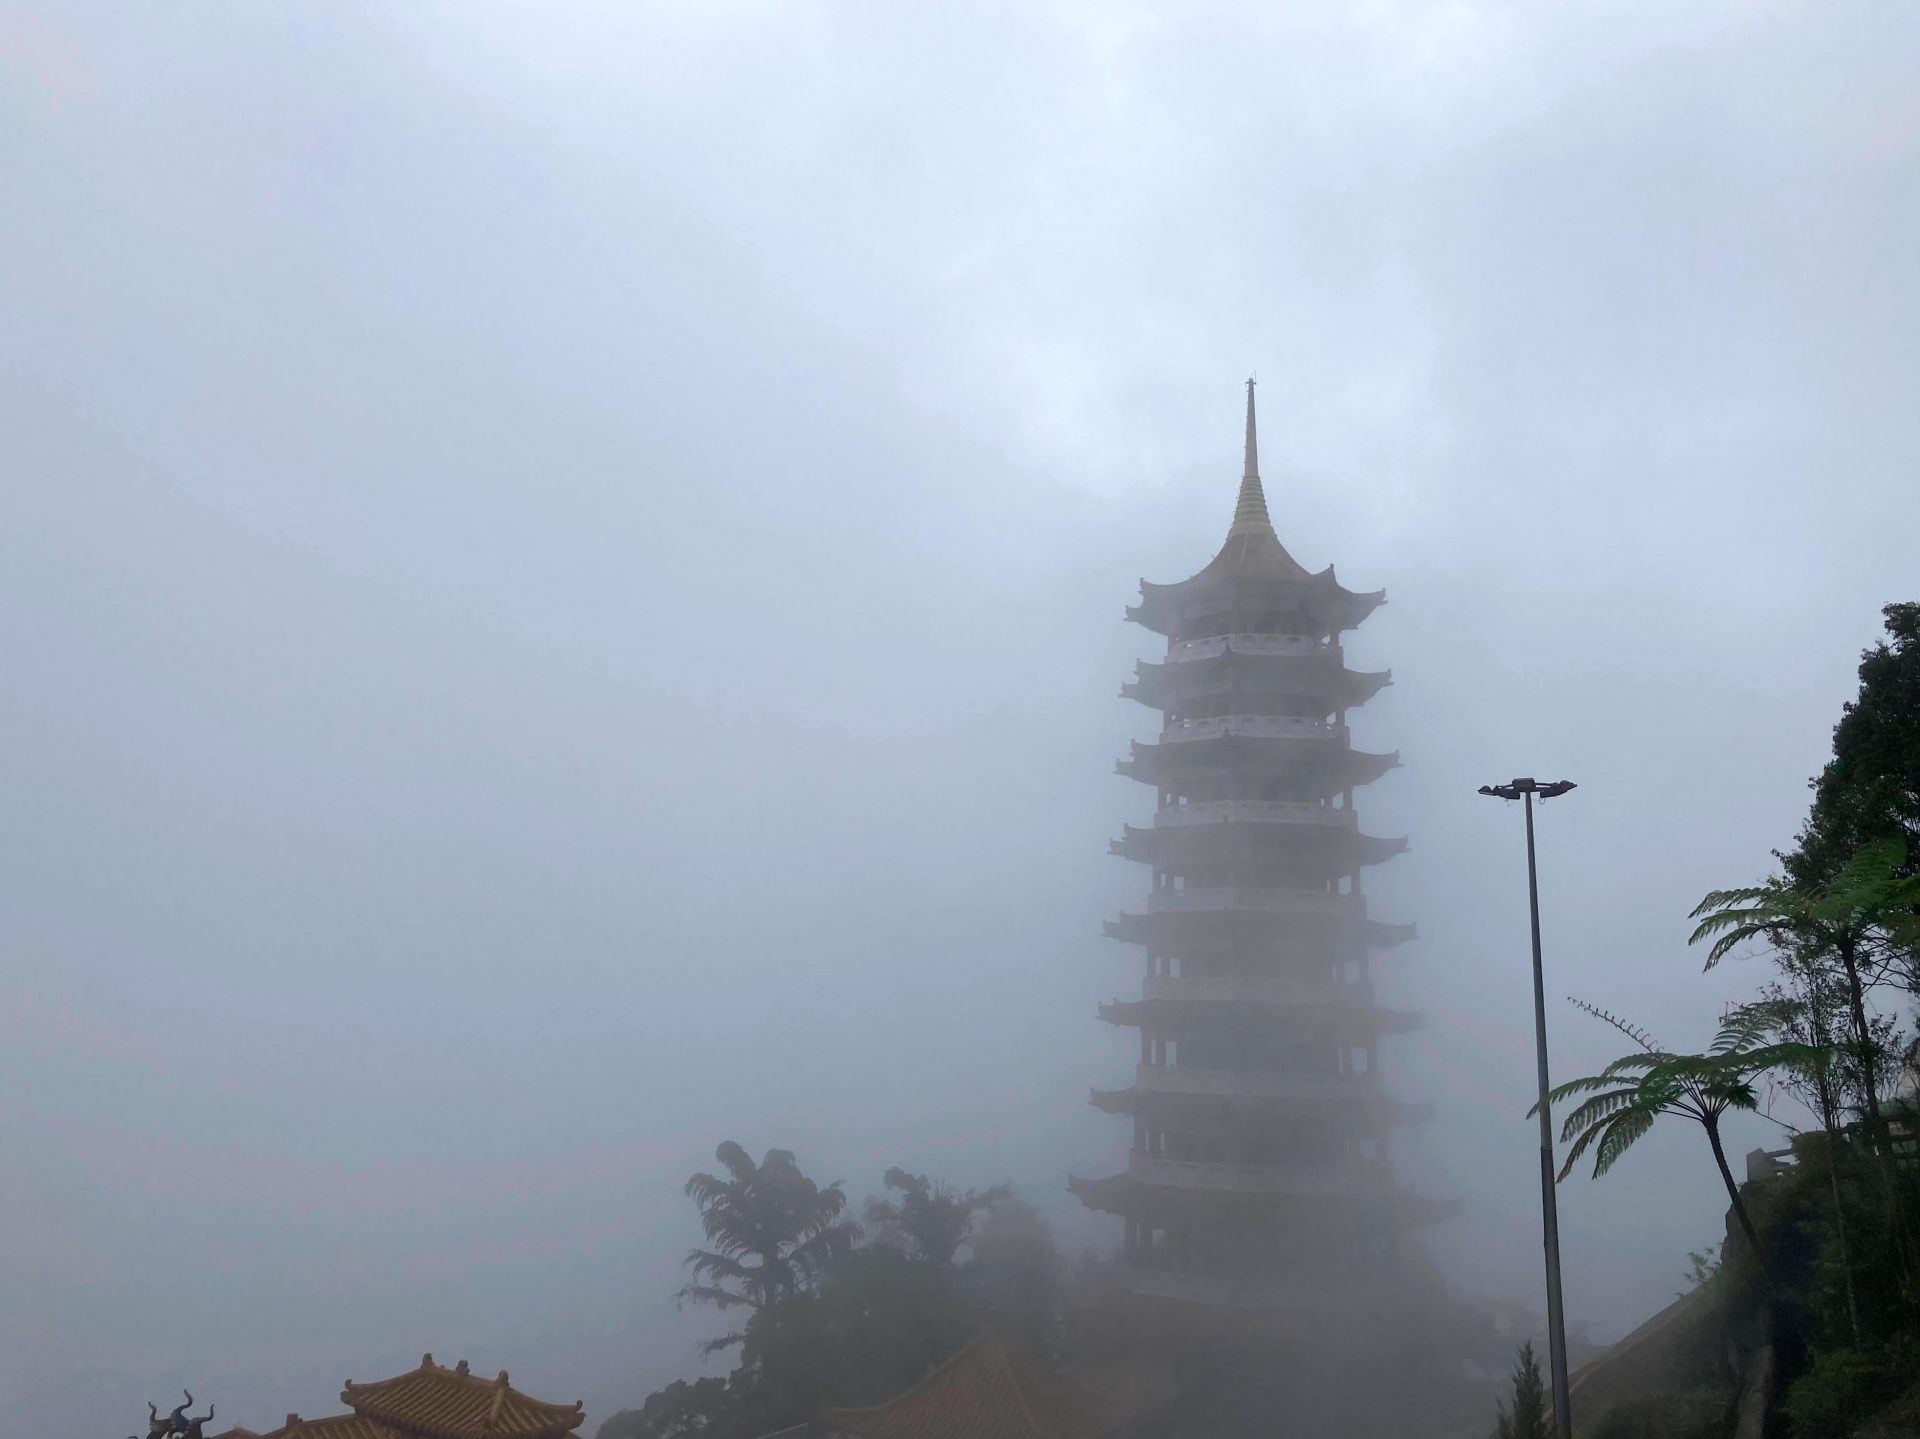 霧の中に佇む仏塔は墨絵のような趣がある